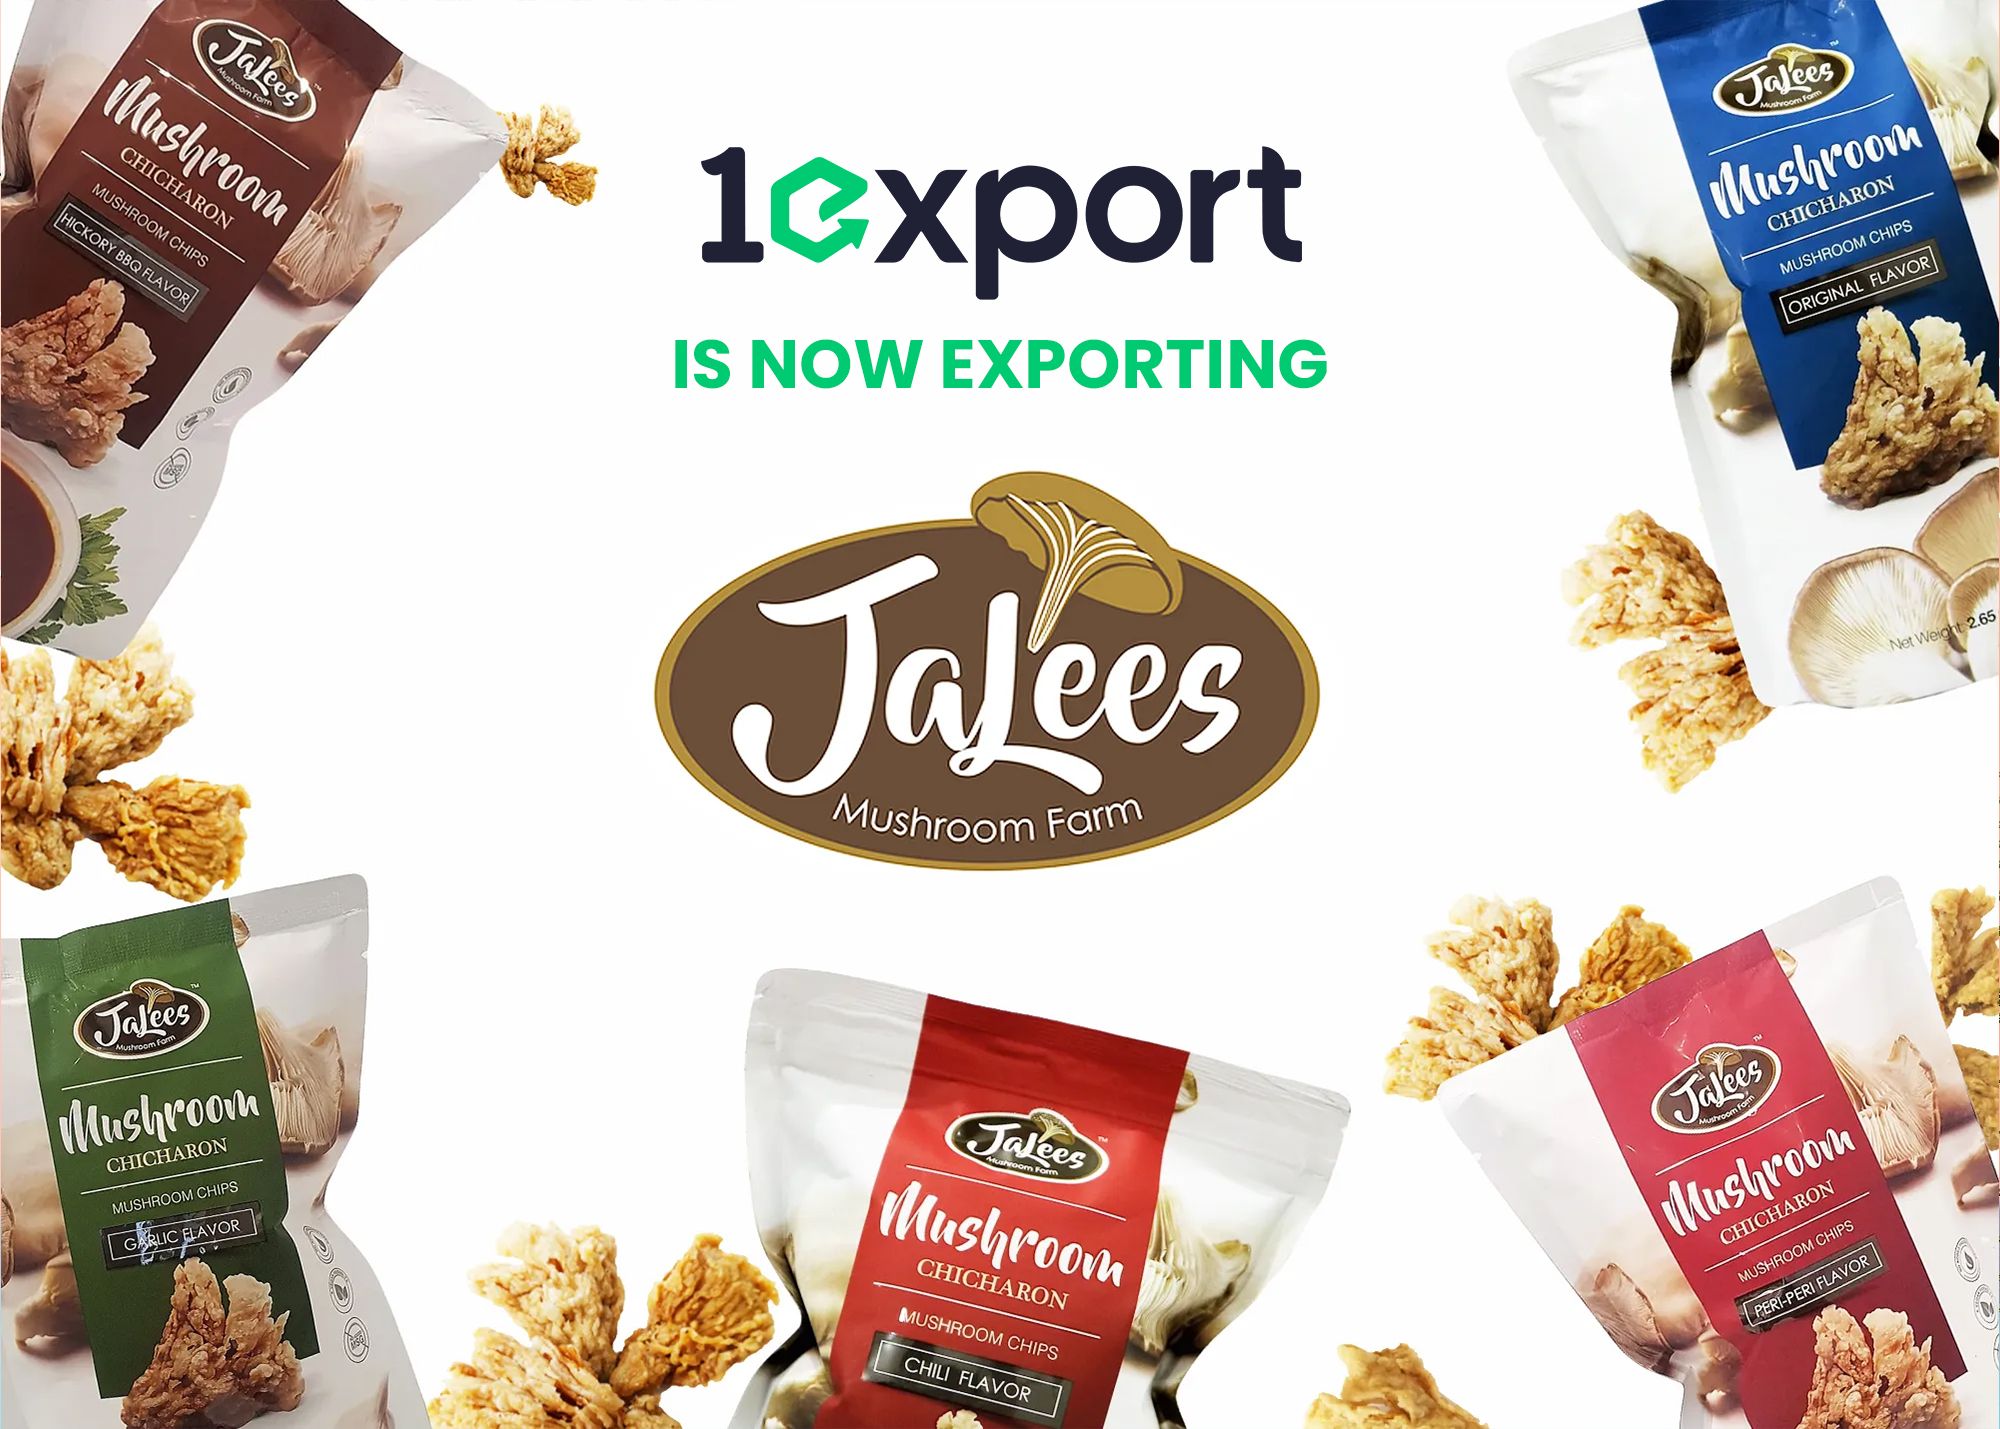 Now exporting JaLees Mushroom Chips